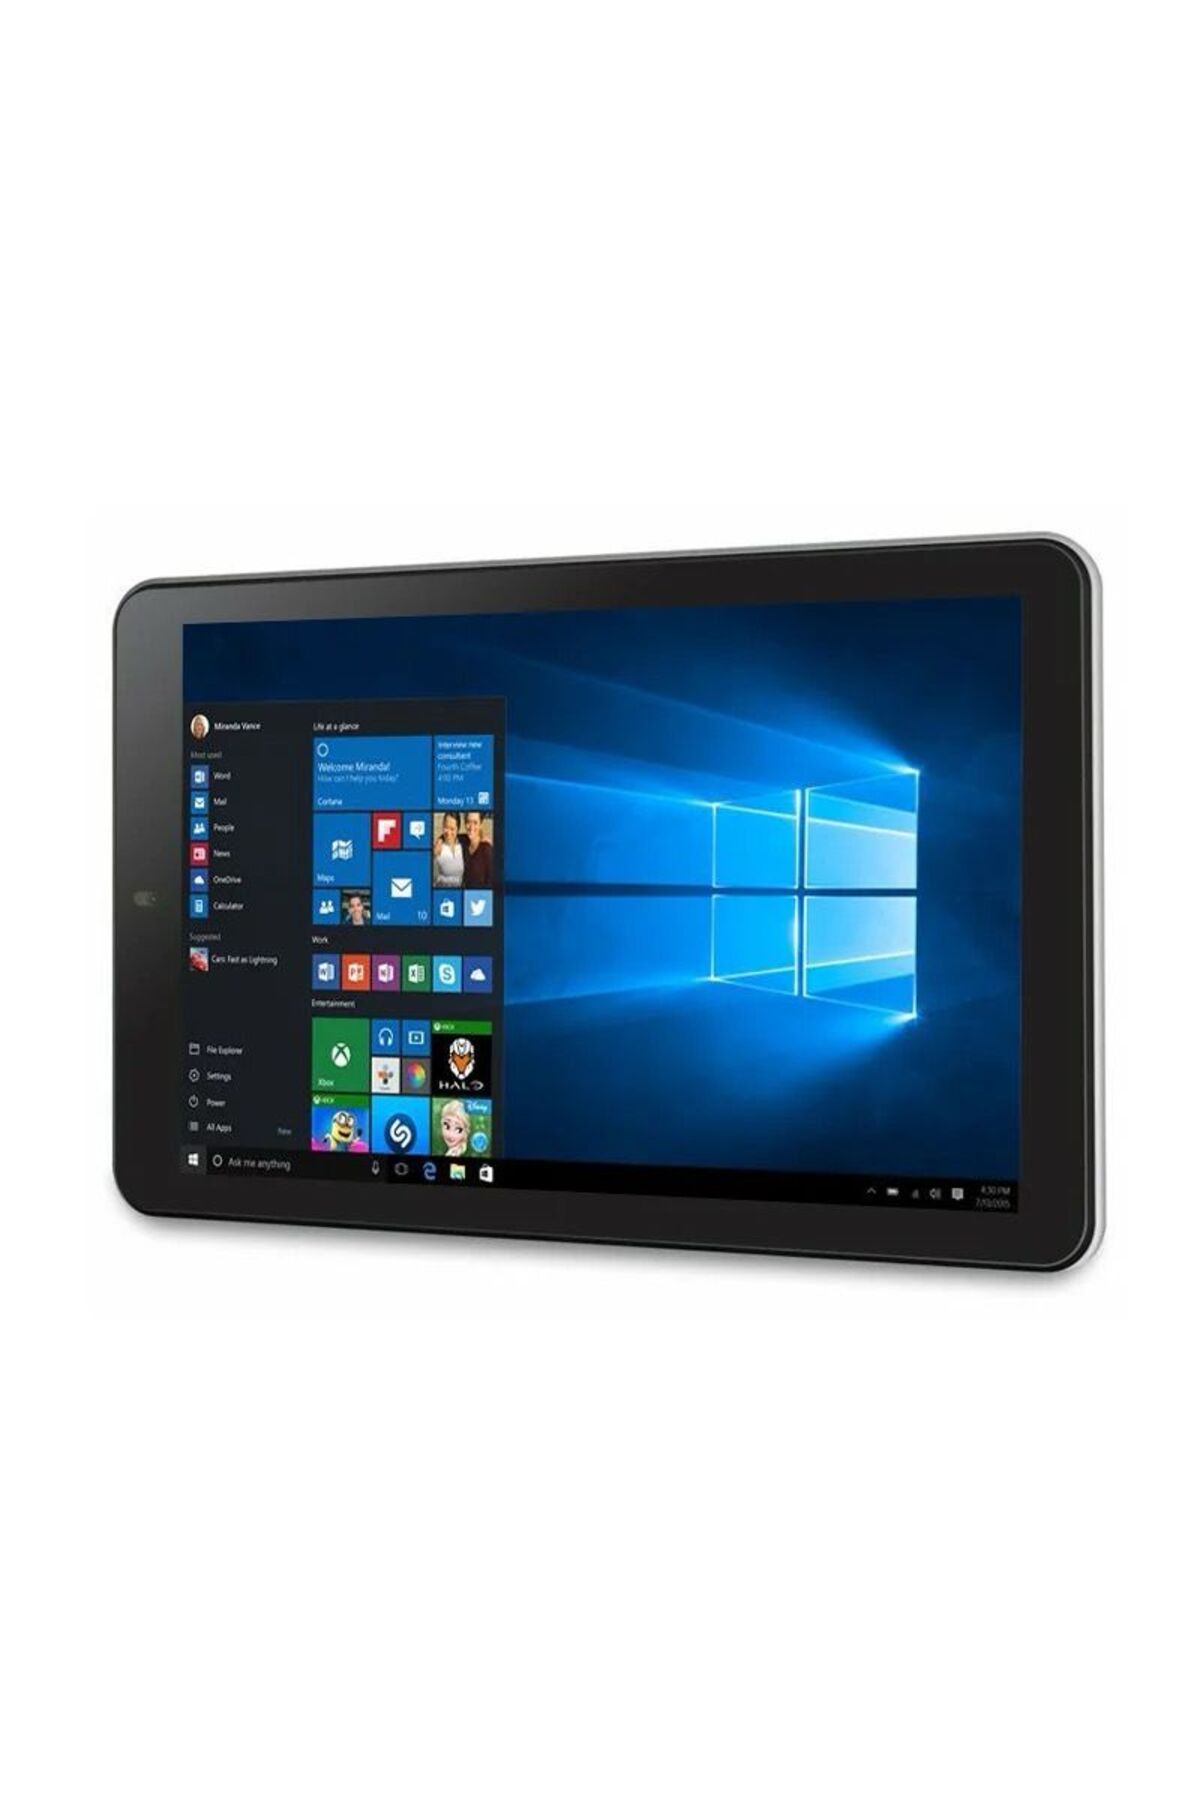 FOSILAVM RCA03 Windows 10 Tablet PC 10.1 inç ekran 2GB RAM 32GB ROM USB 3.0 hdmi-uyumlu